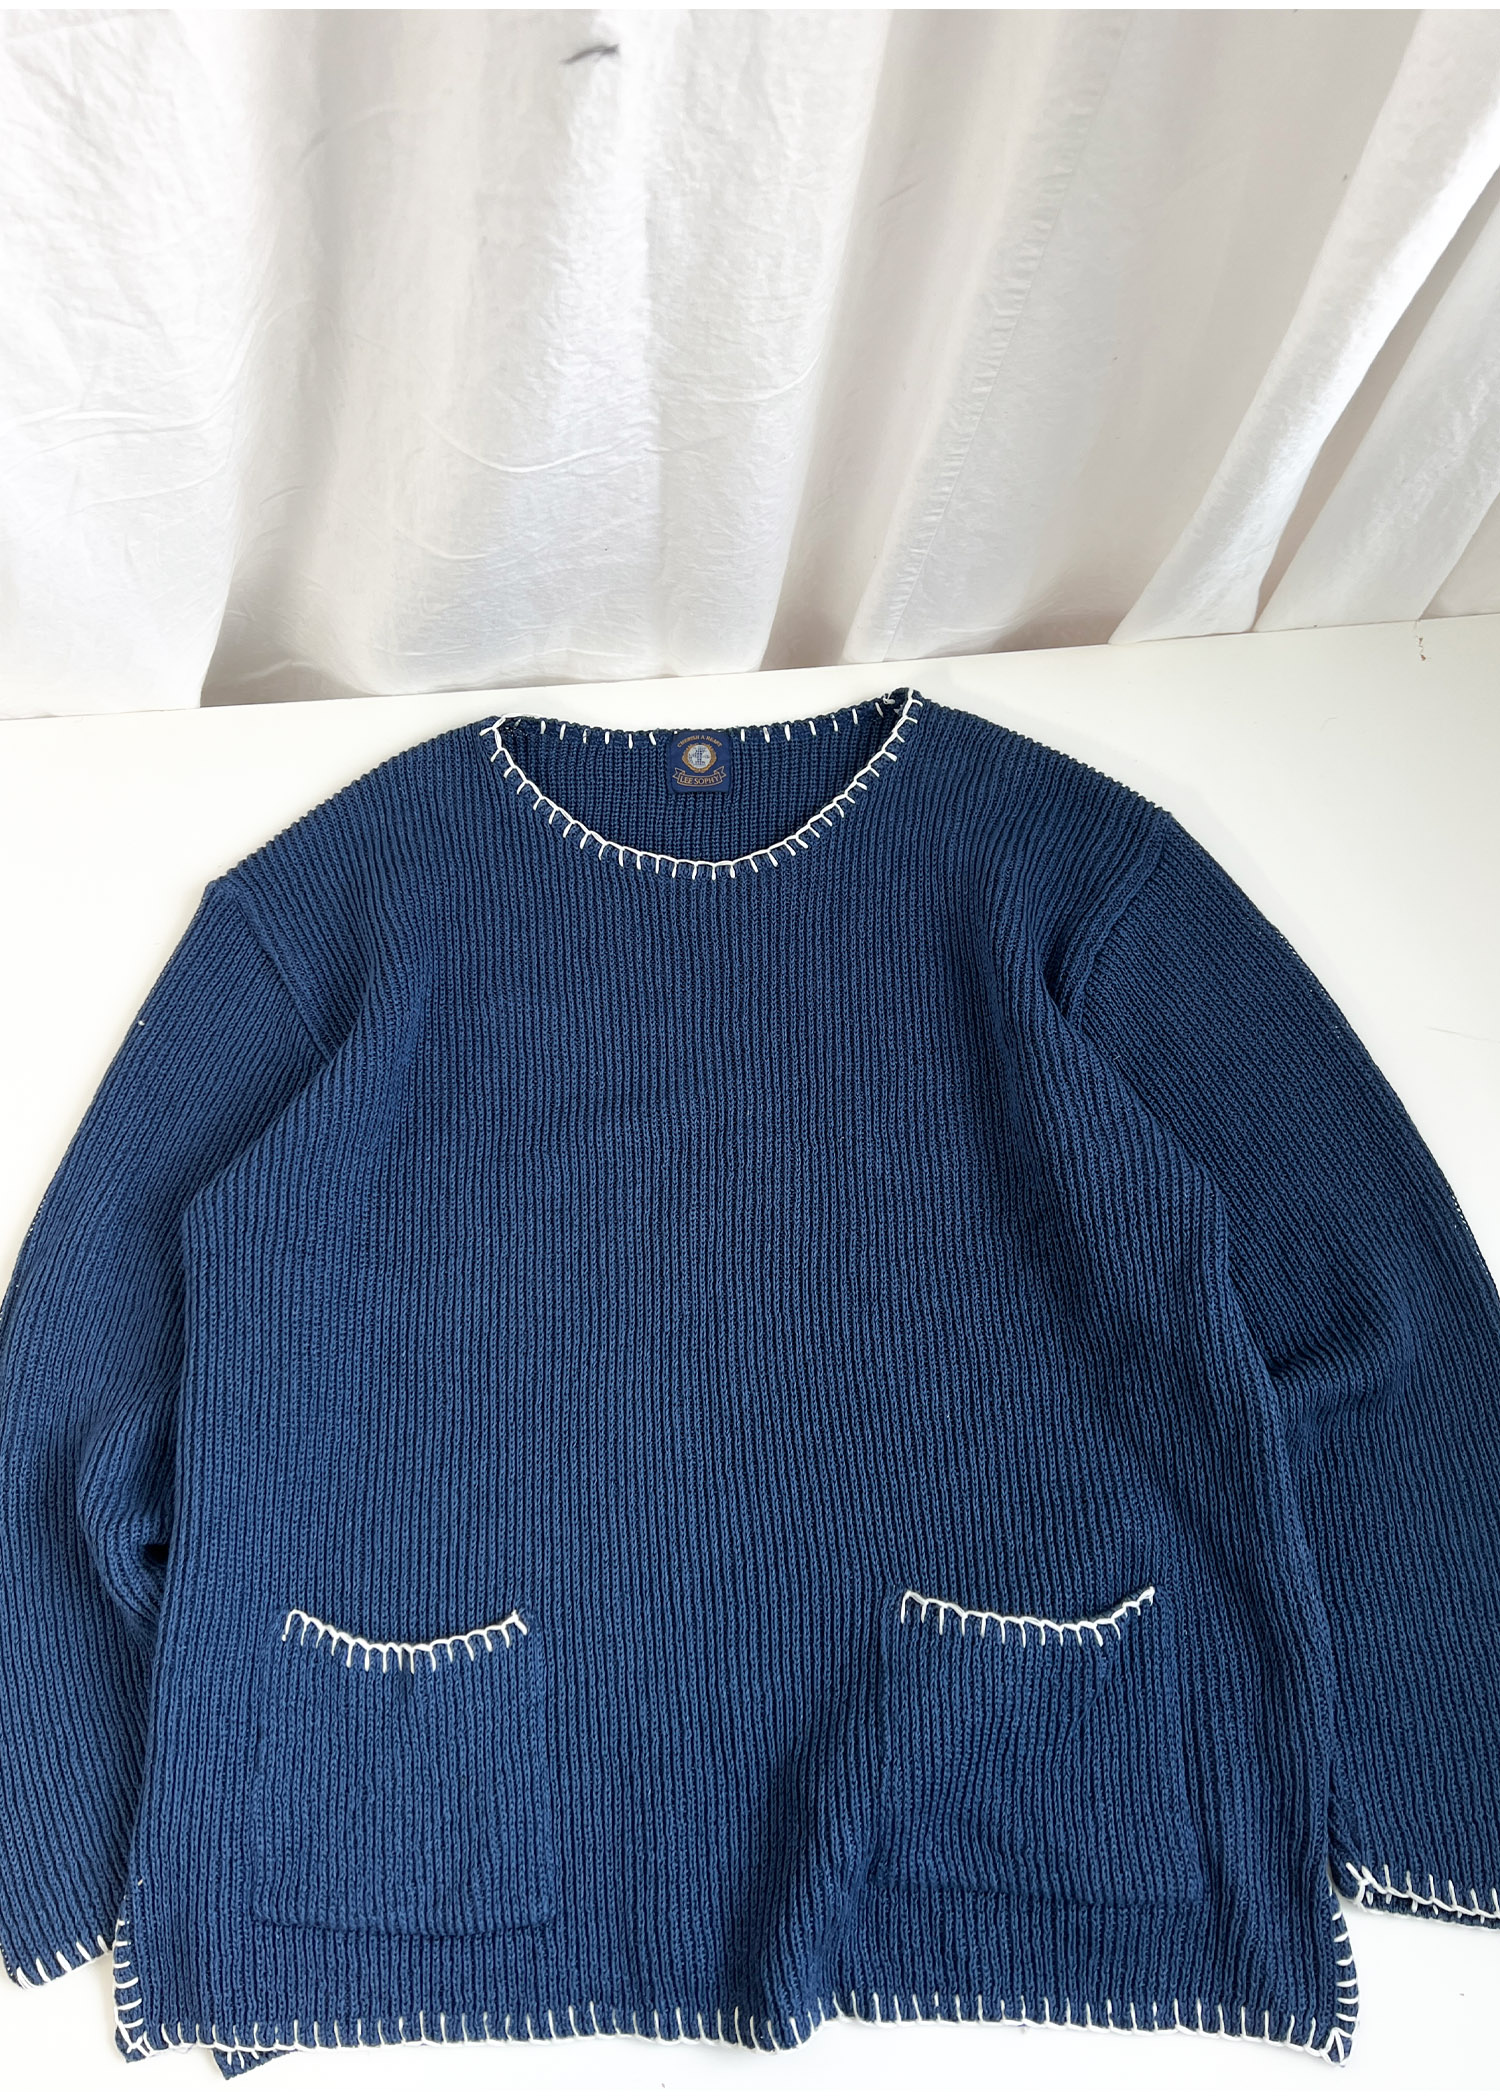 LEE SOPHY stitch knit